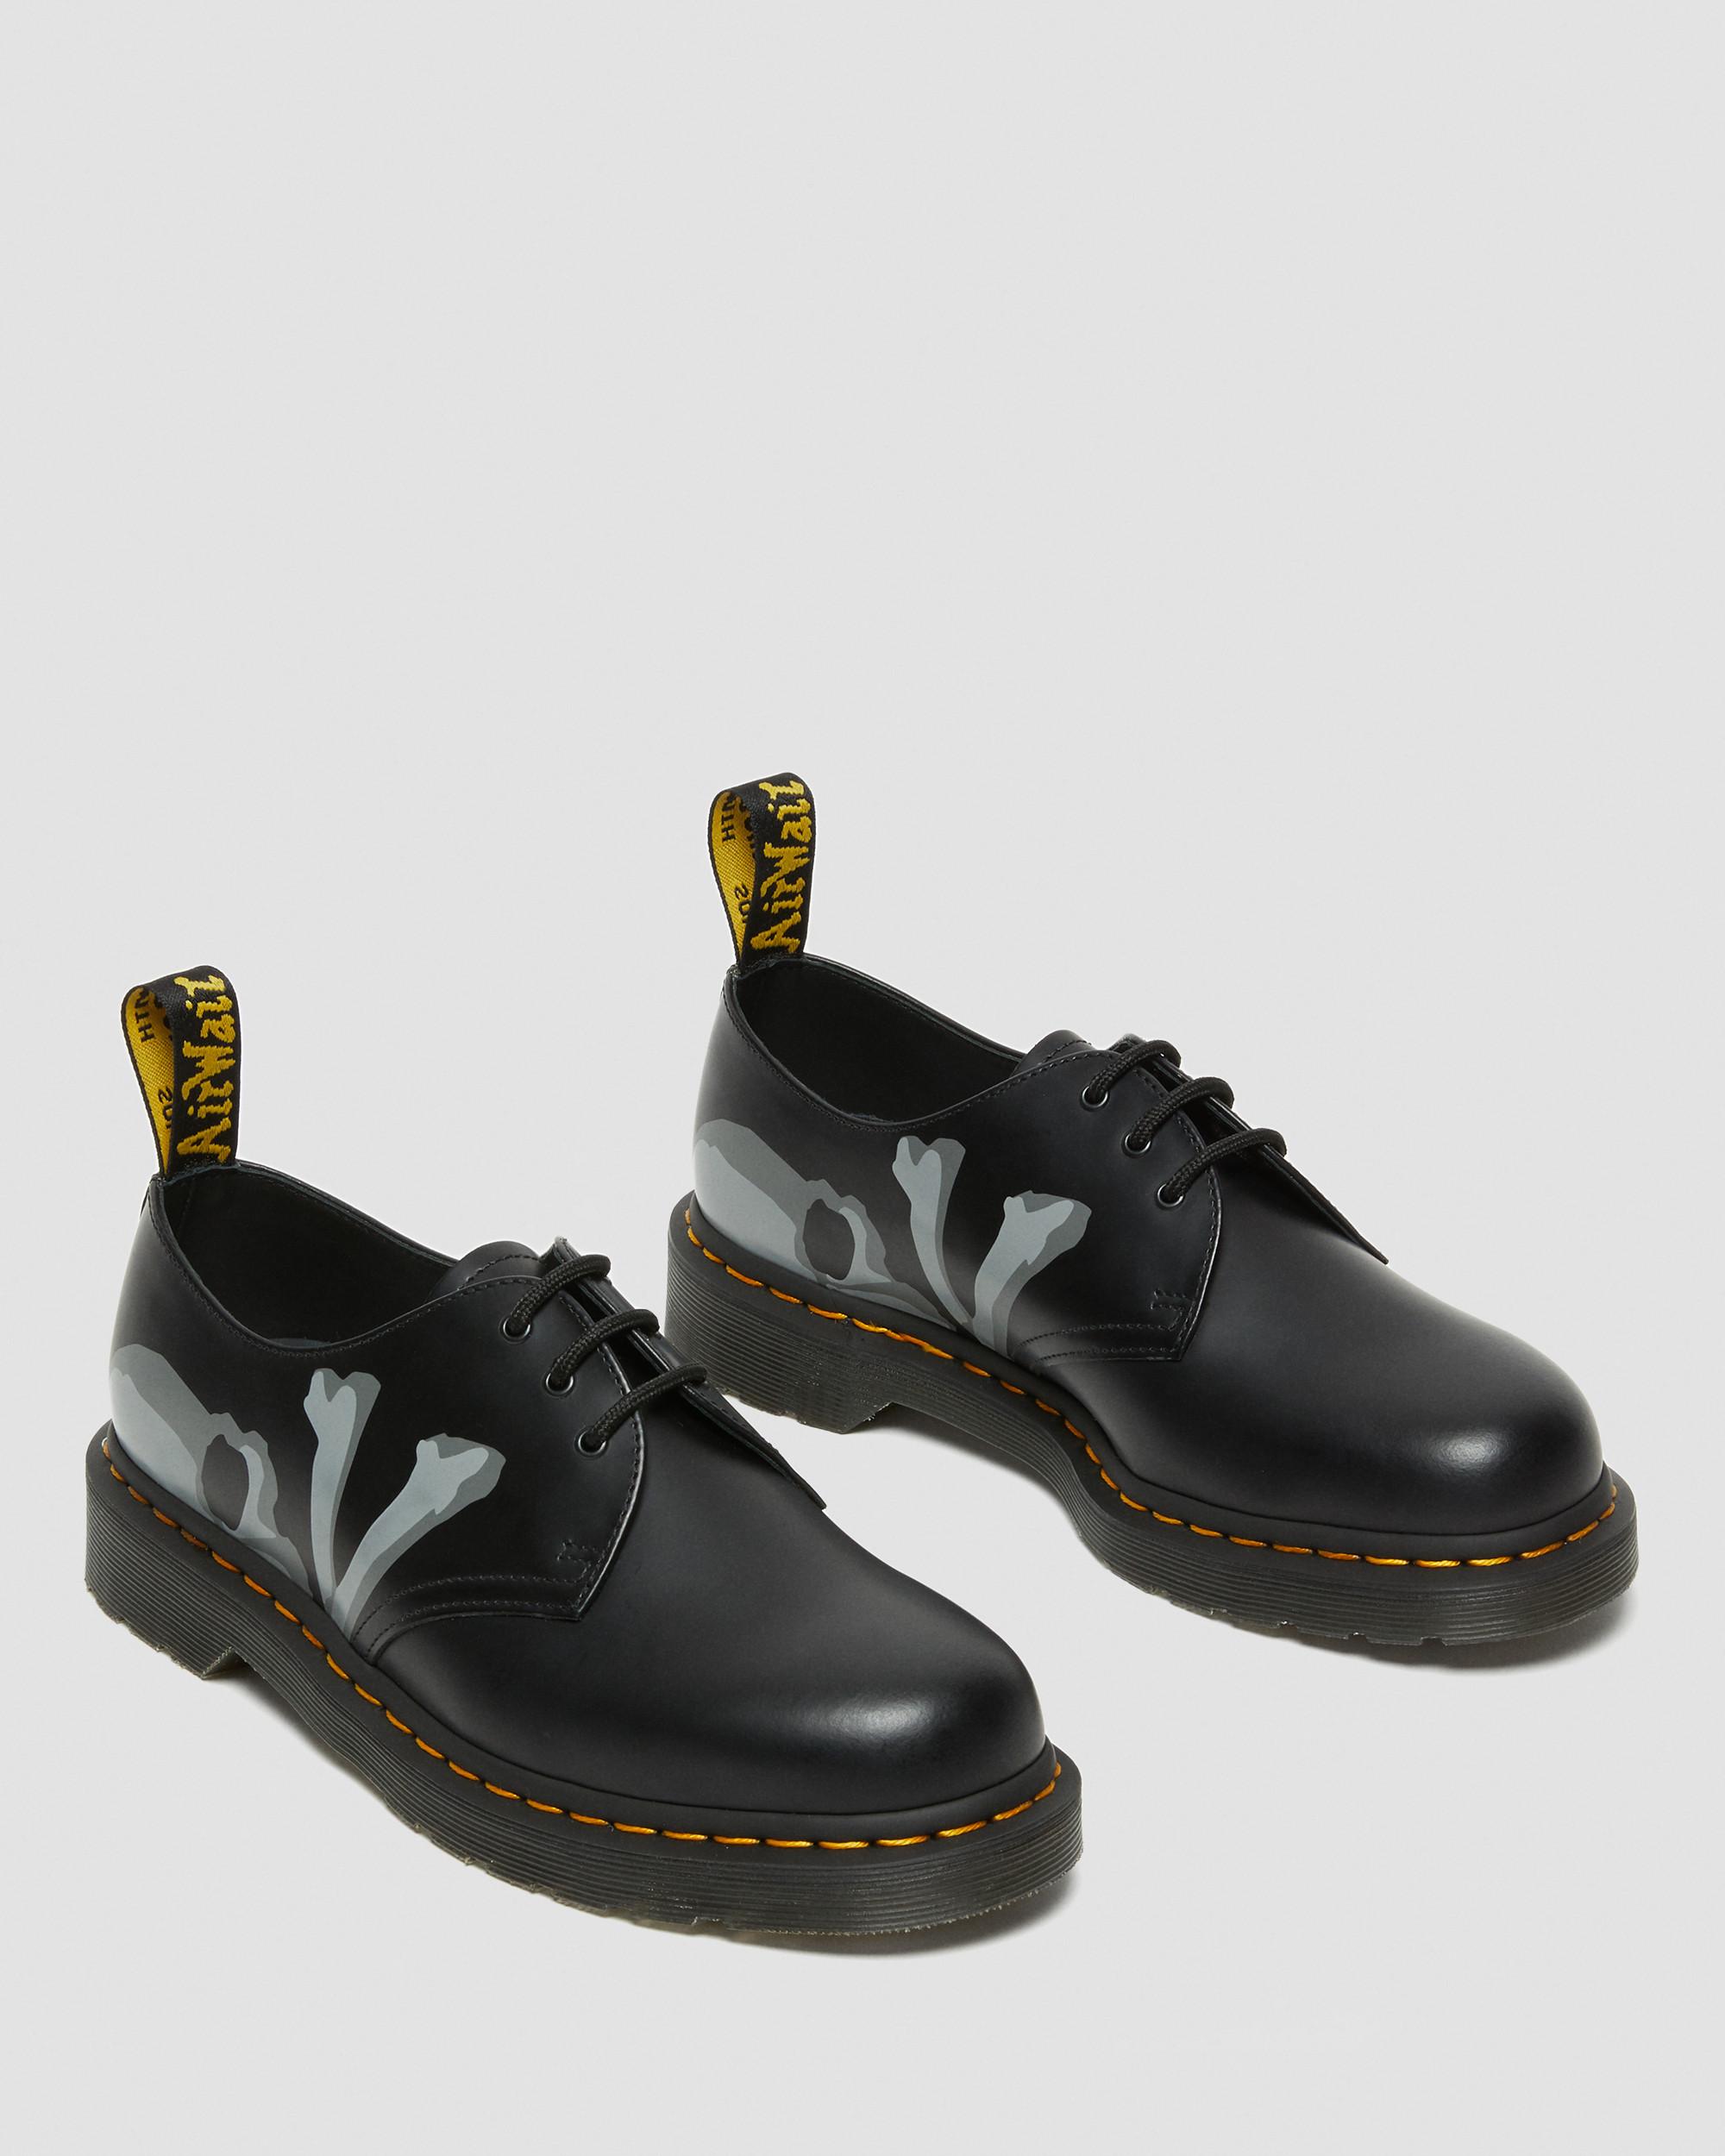 DR MARTENS A BATHING APE® x mastermind JAPAN 1461 Shoes